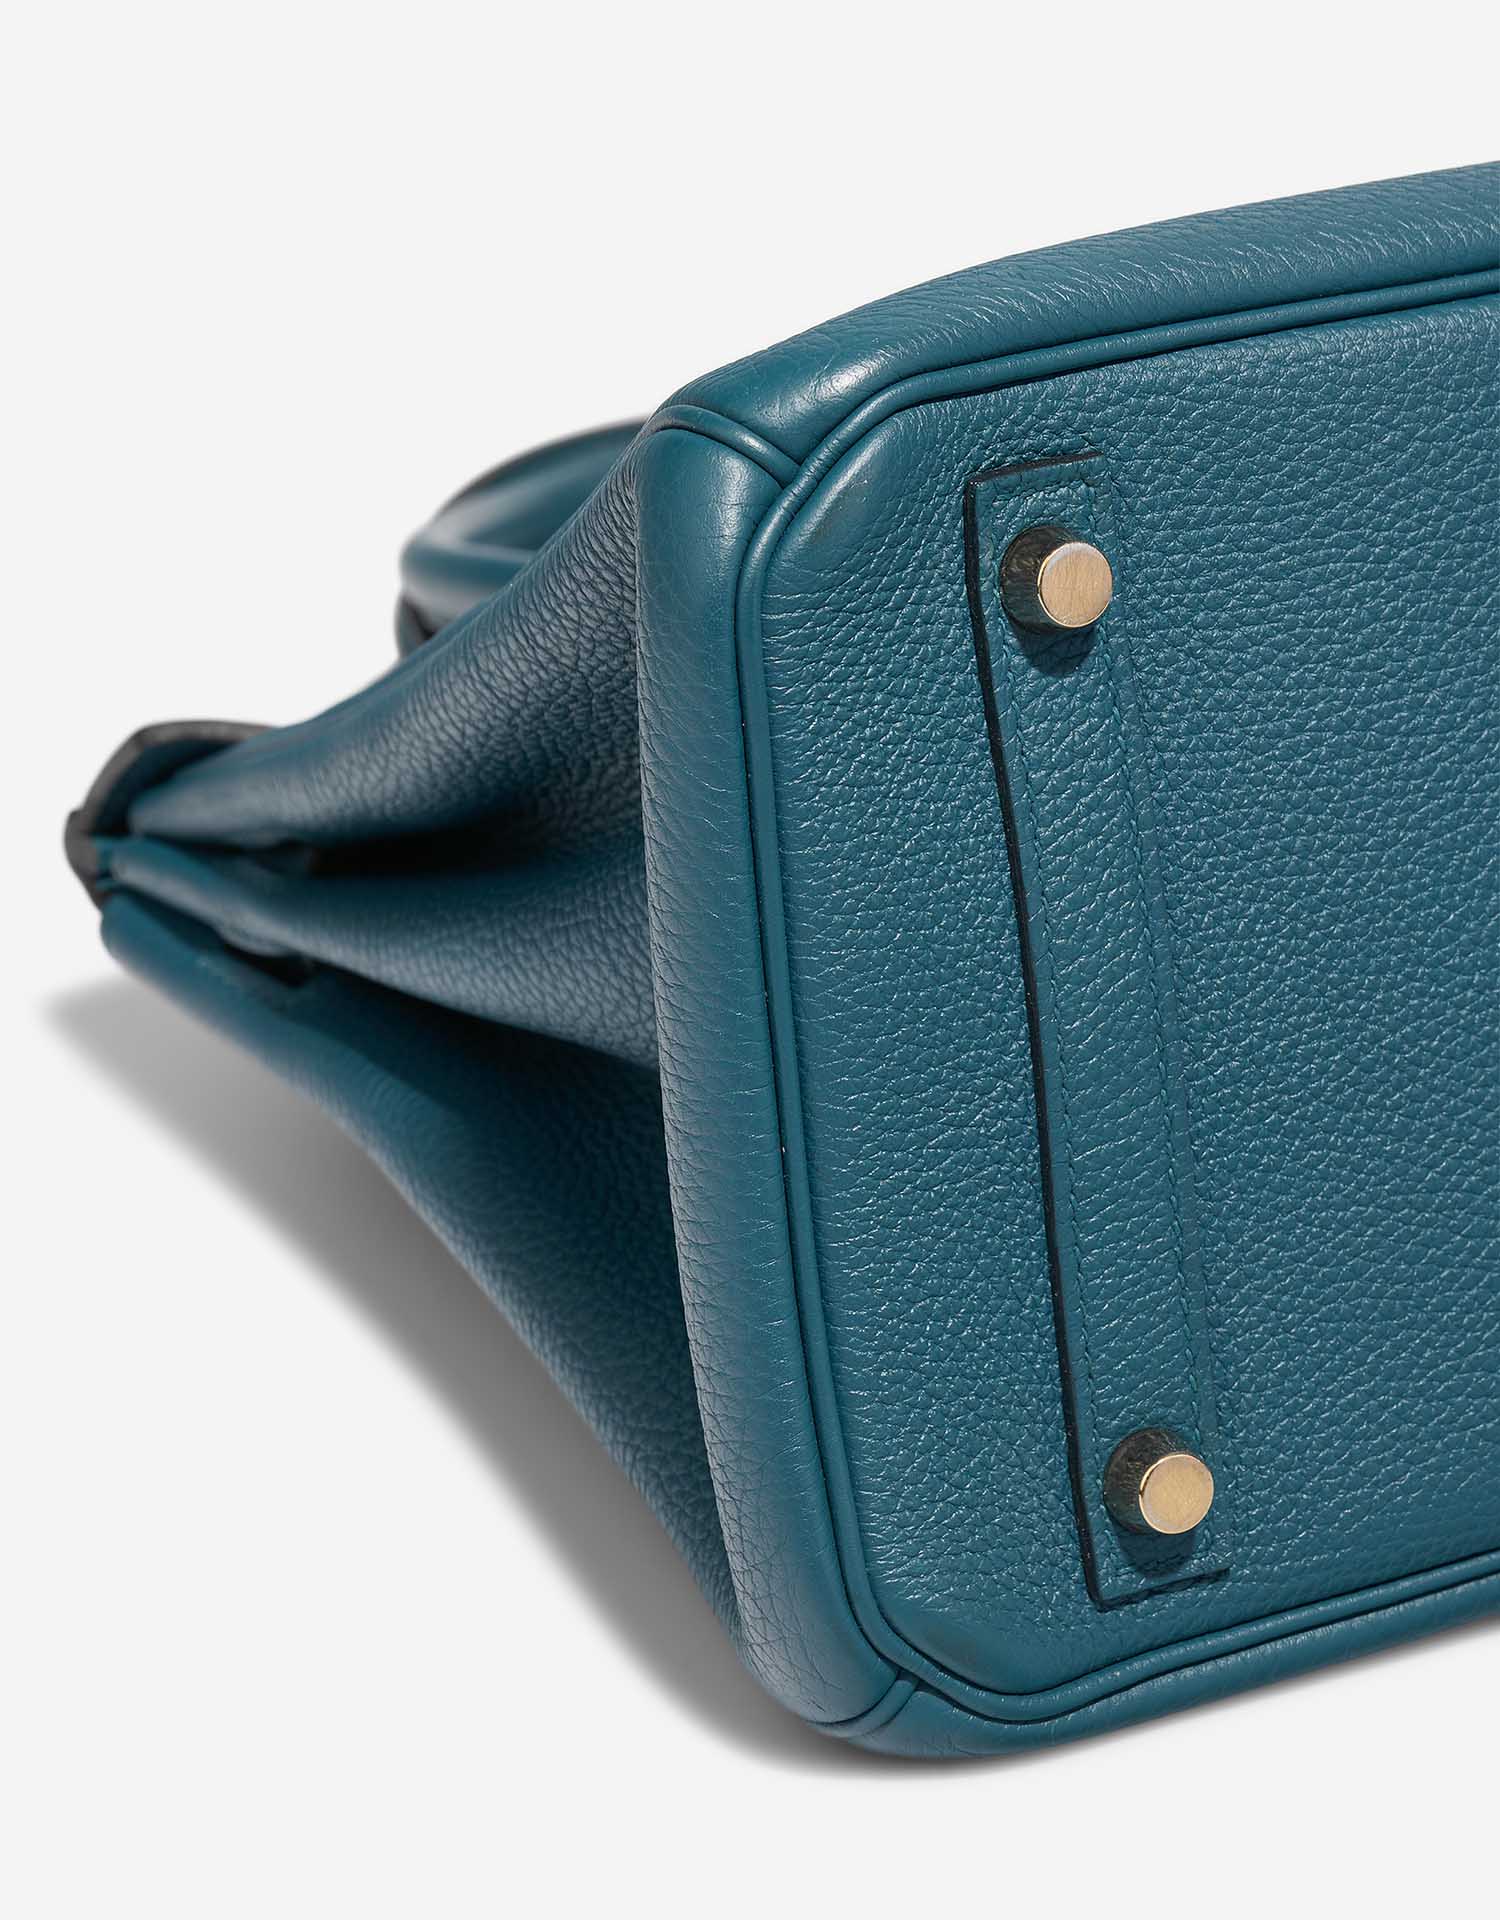 Hermès Birkin 30 Colvert signes d'usure | Vendez votre sac de créateur sur Saclab.com